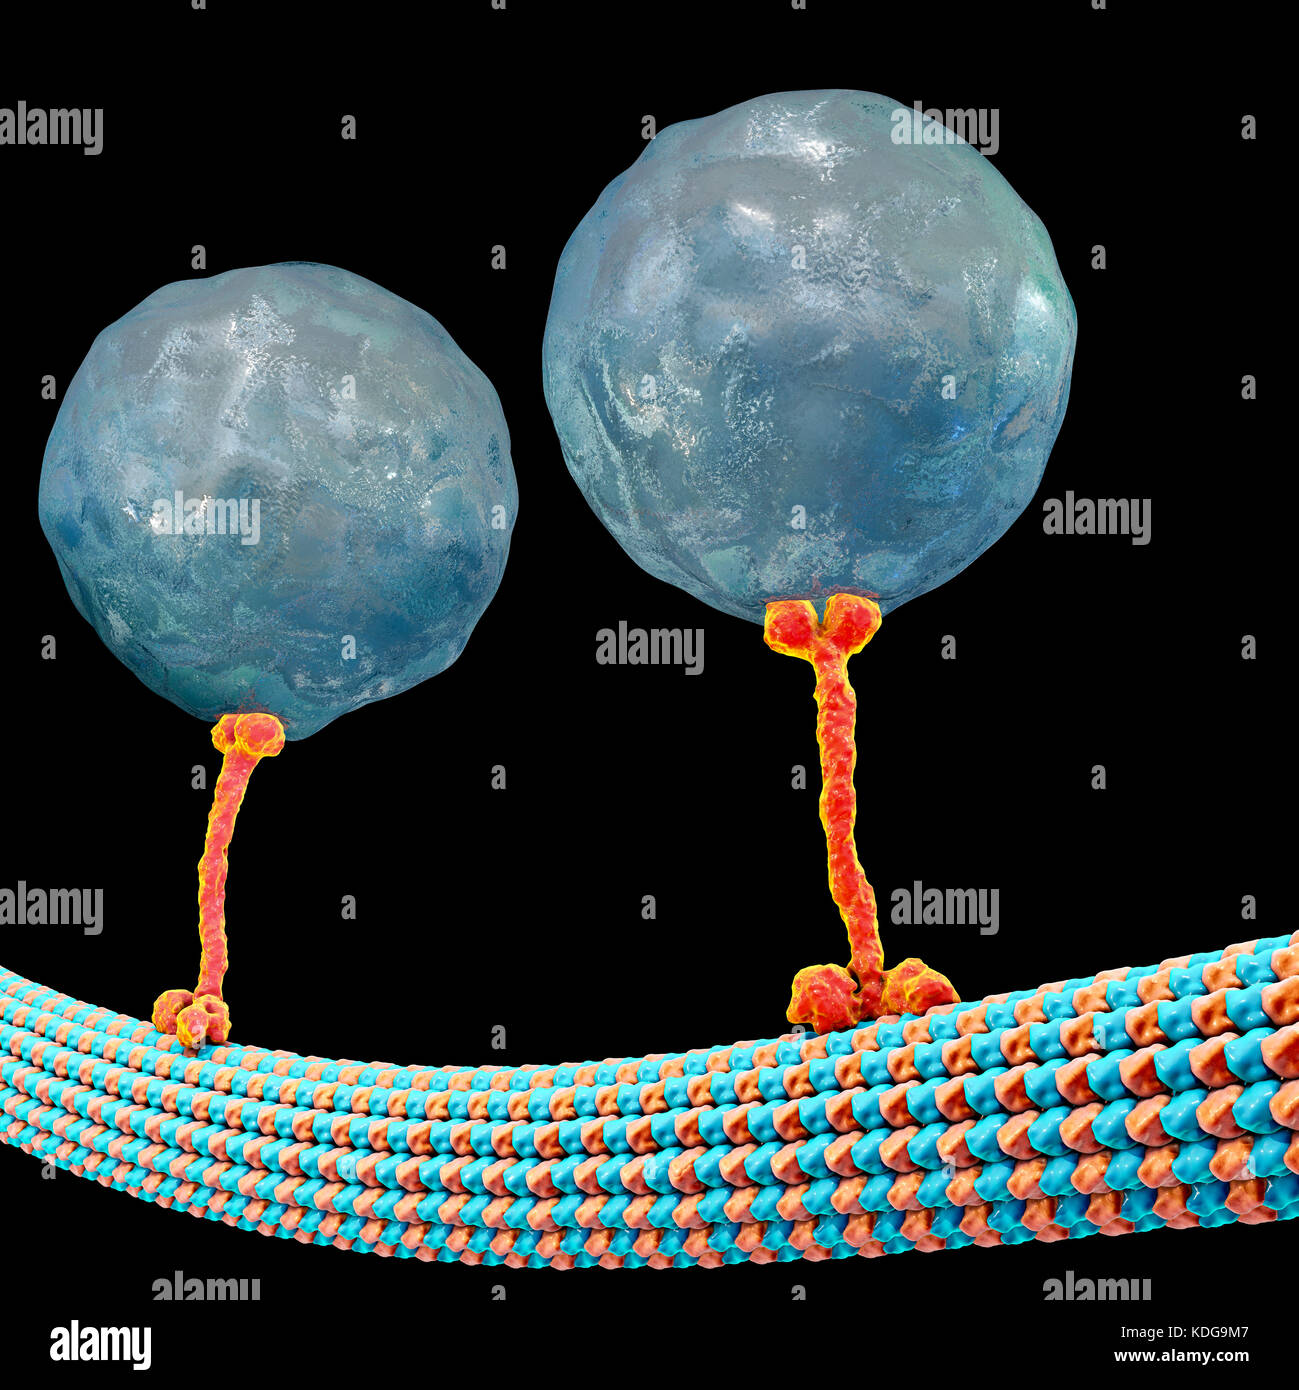 Intrazellulären Transport. Computer Abbildung von Vesikeln (Kugeln) entlang der Mikrotubuli durch ein Protein kinesin Motor transportiert werden. Kinesins sind in der Lage, 'Walk' entlang der Mikrotubuli. Mikrotubuli sind Polymere aus dem Protein Tubulin und sind Bestandteil des Zytoskeletts. Stockfoto